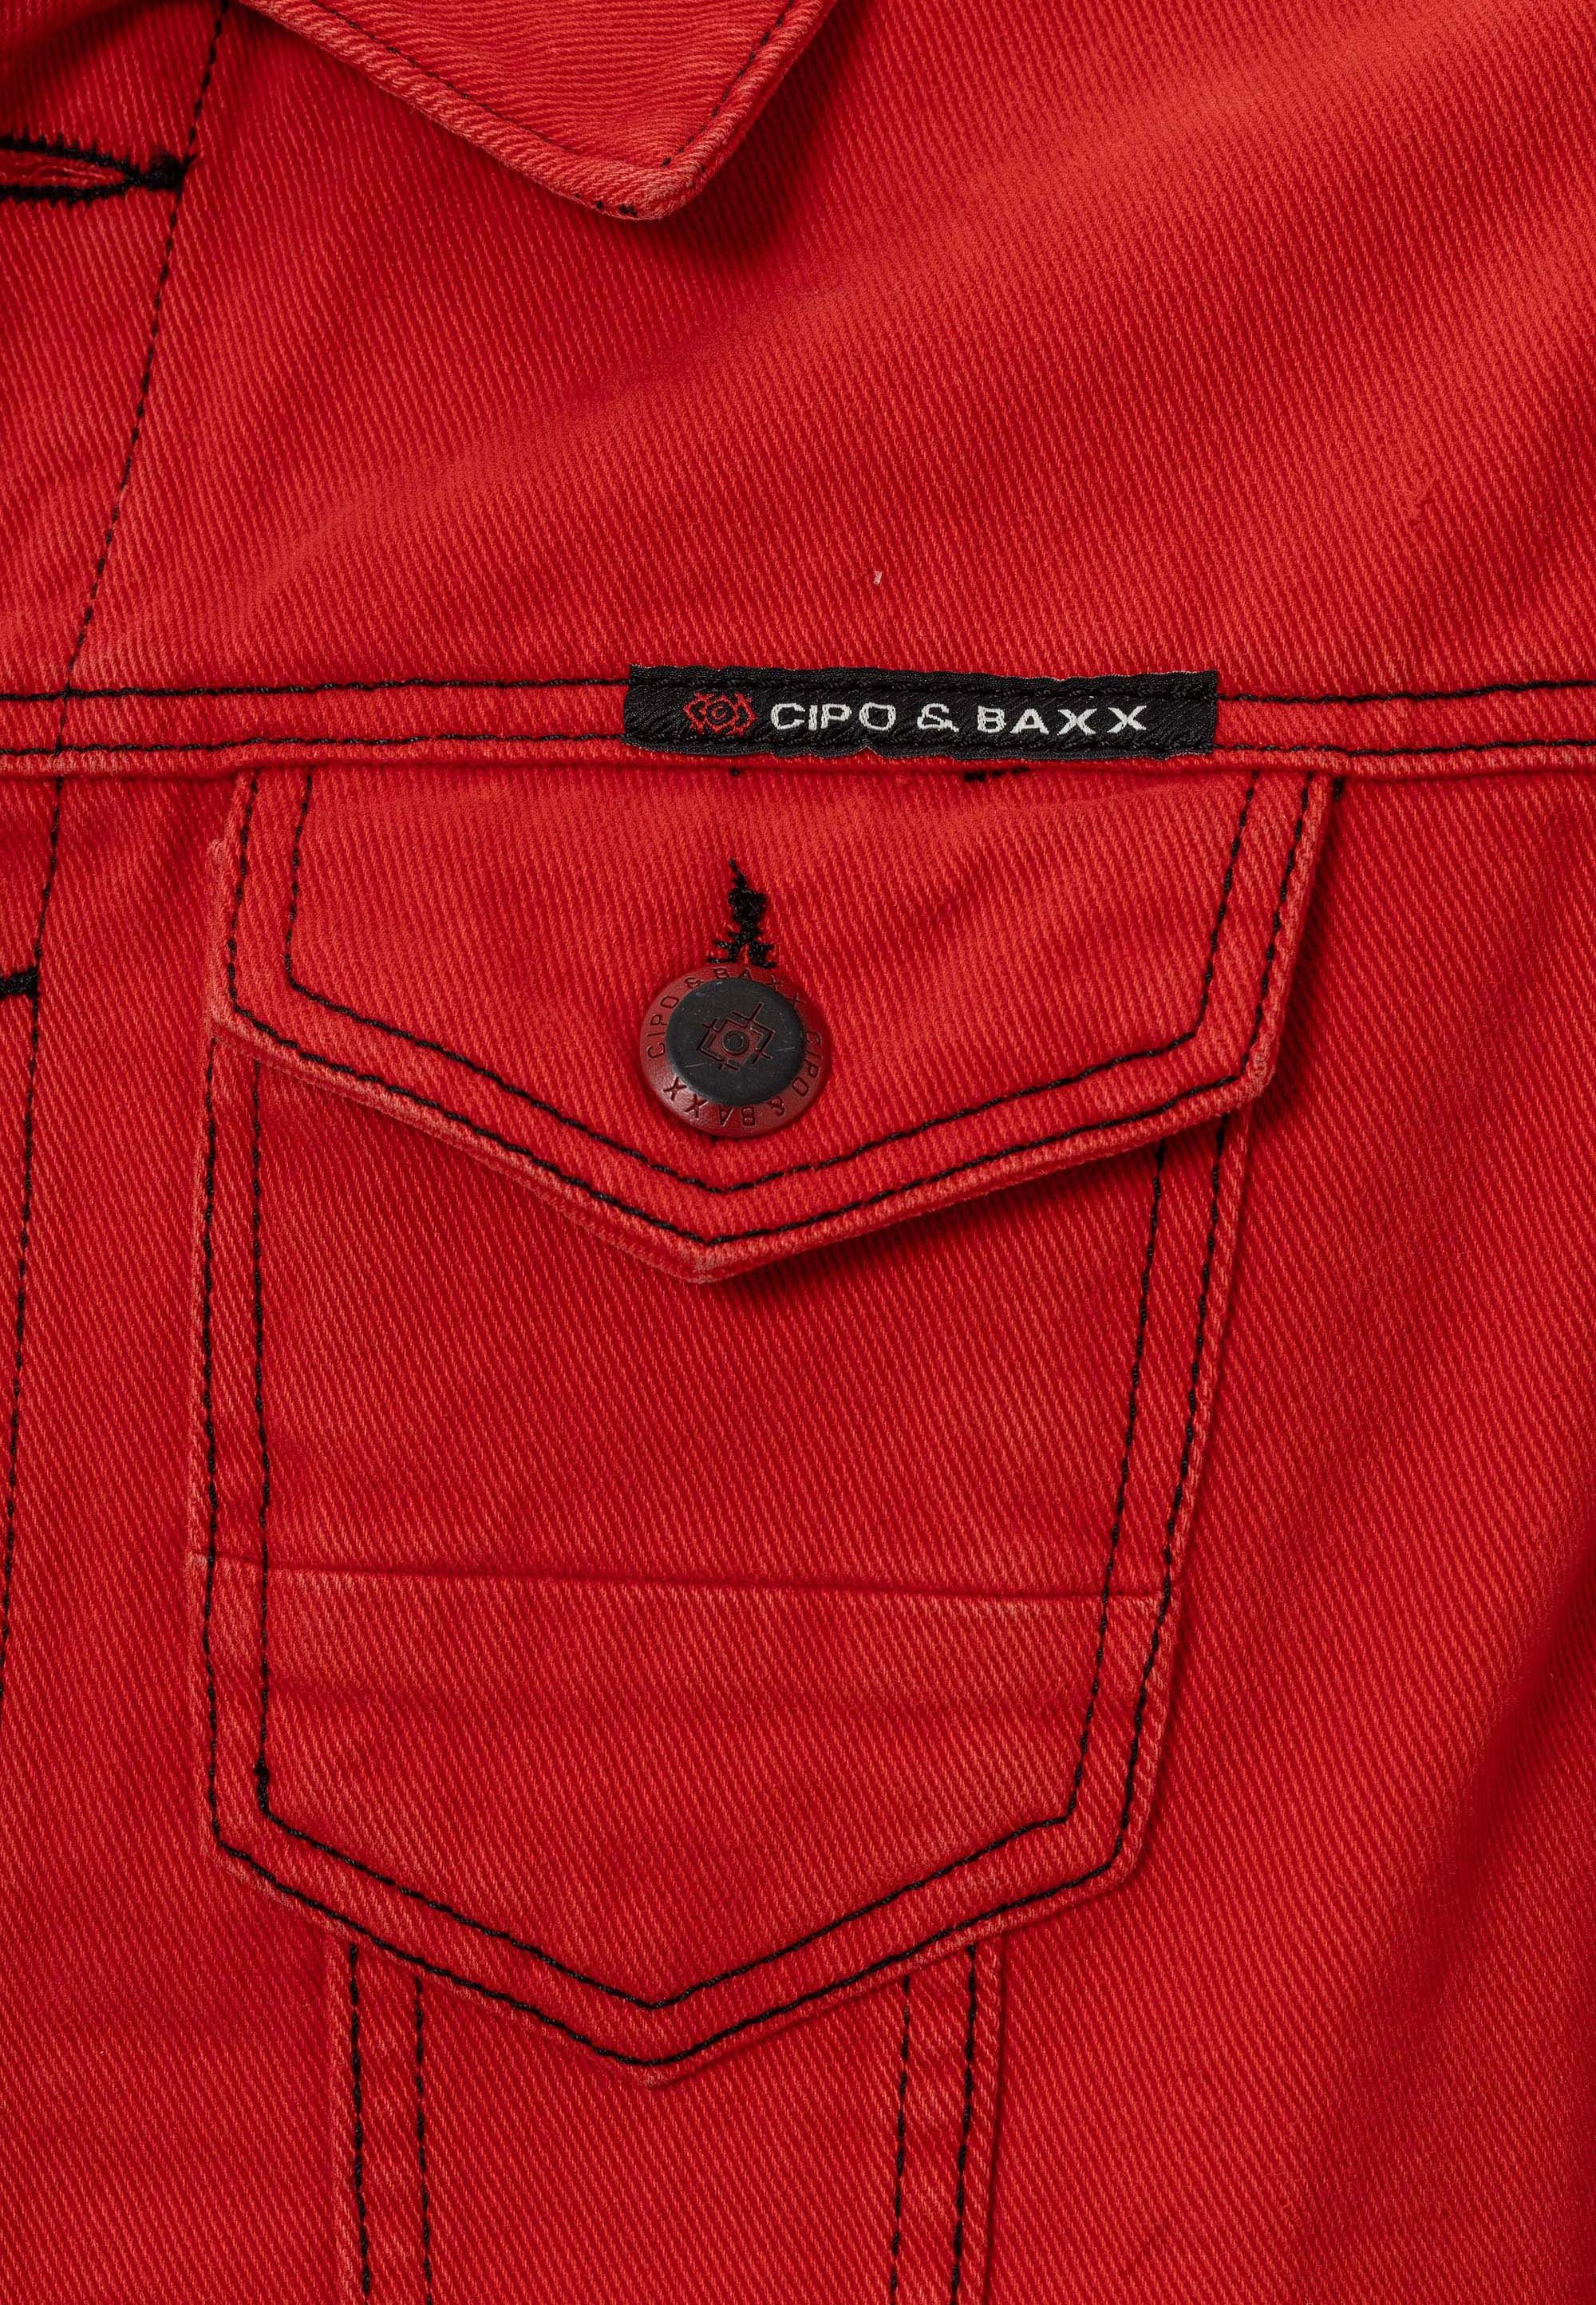 Cipo Baxx Jeansjacke rot Brusttaschen aufgesetzten & mit